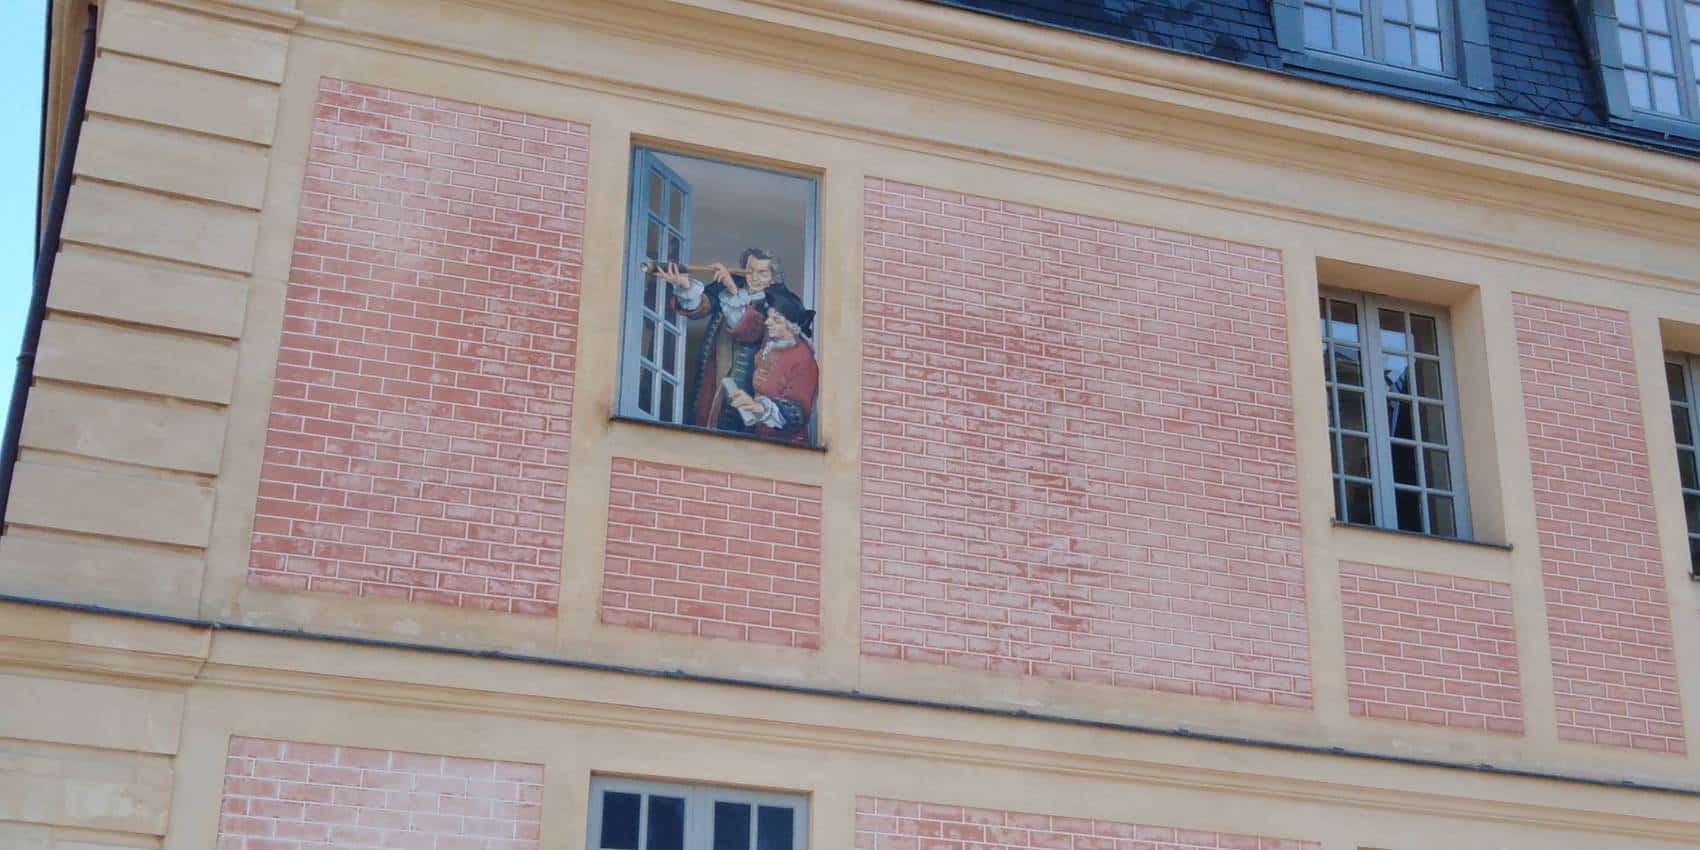 Trompe de l'oile at Hotel des Gendarmes, Versailles. M.L. Tilloy photo.